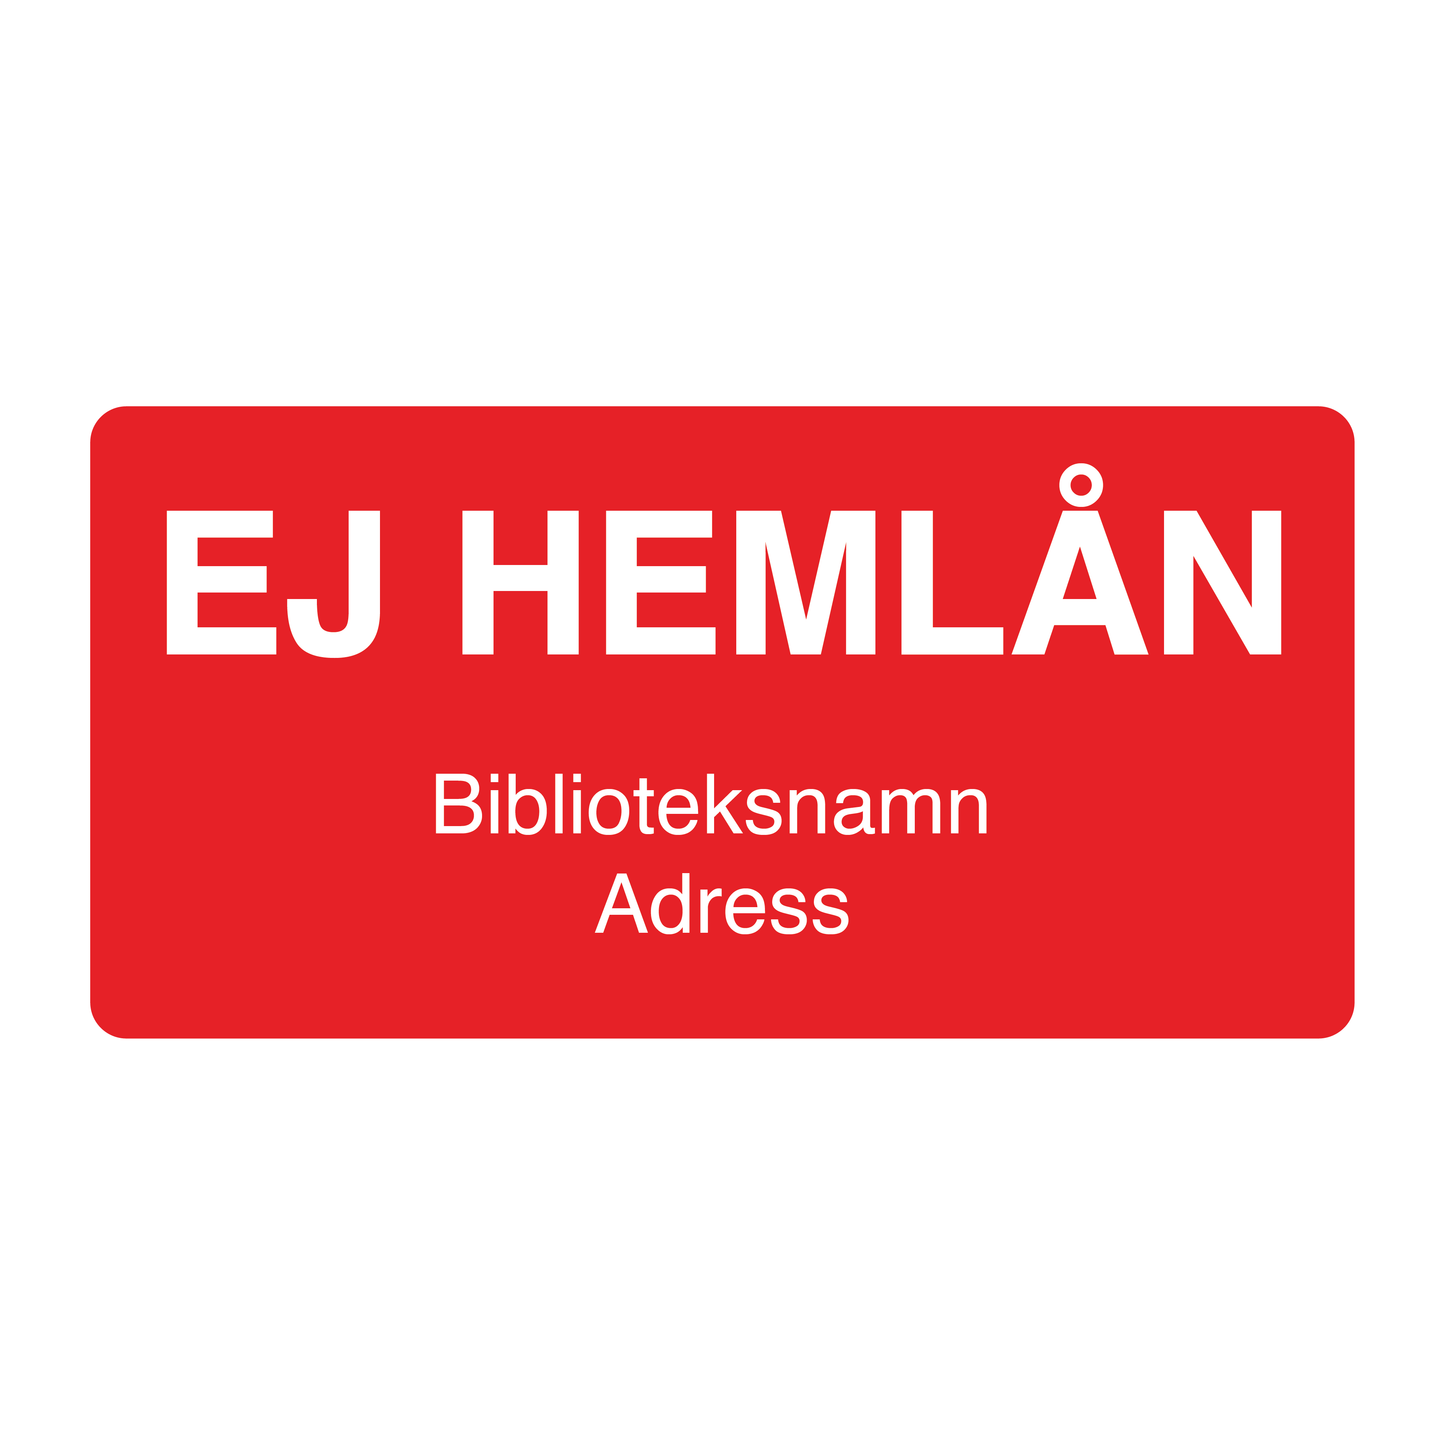 EJ Hemlån Bibliotek Etiketter